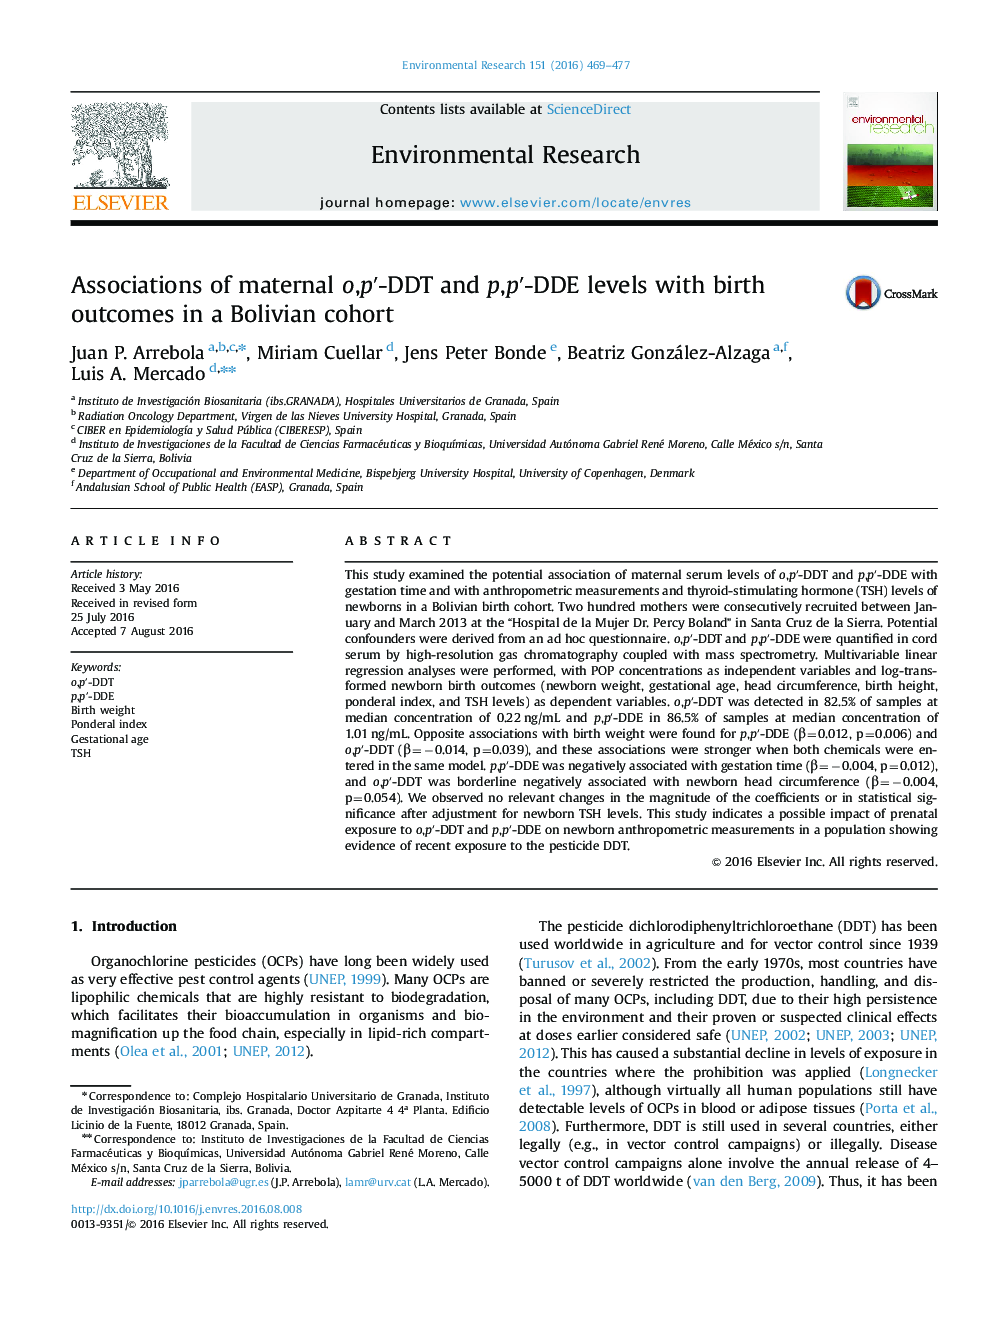 Associations of maternal o,pâ²-DDT and p,pâ²-DDE levels with birth outcomes in a Bolivian cohort